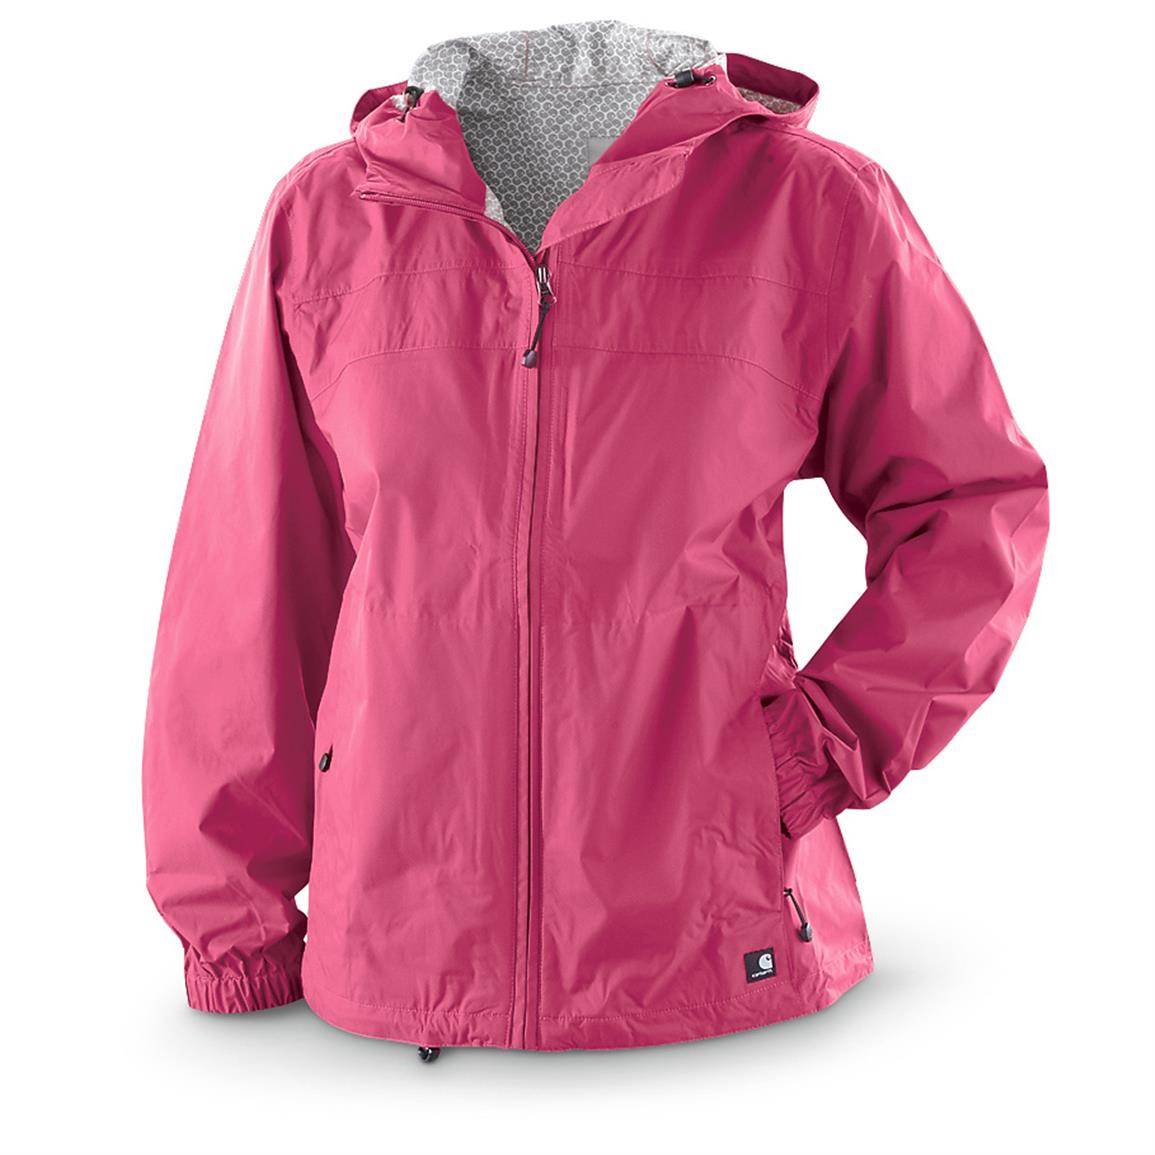 Women's Carhartt Downburst Waterproof Breathable Jacket - 640252, Rain ...